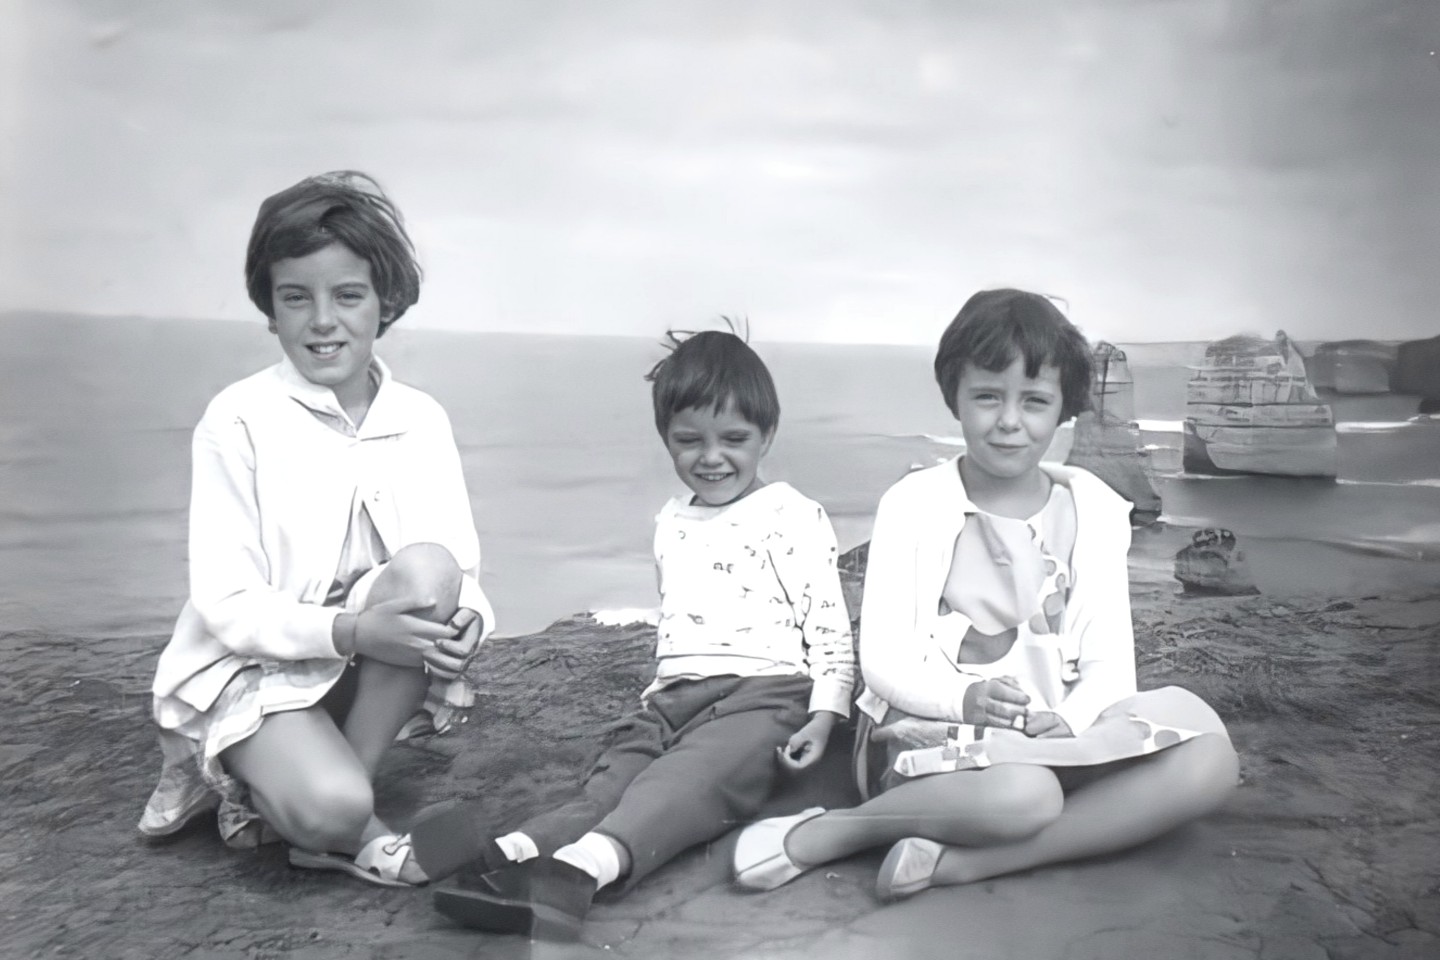 Jane, Grant y Arnna Beaumont, fotografiados durante un viaje familiar de 1965 a los Doce Apóstoles cerca de Port Campbell, Victoria, Australia.